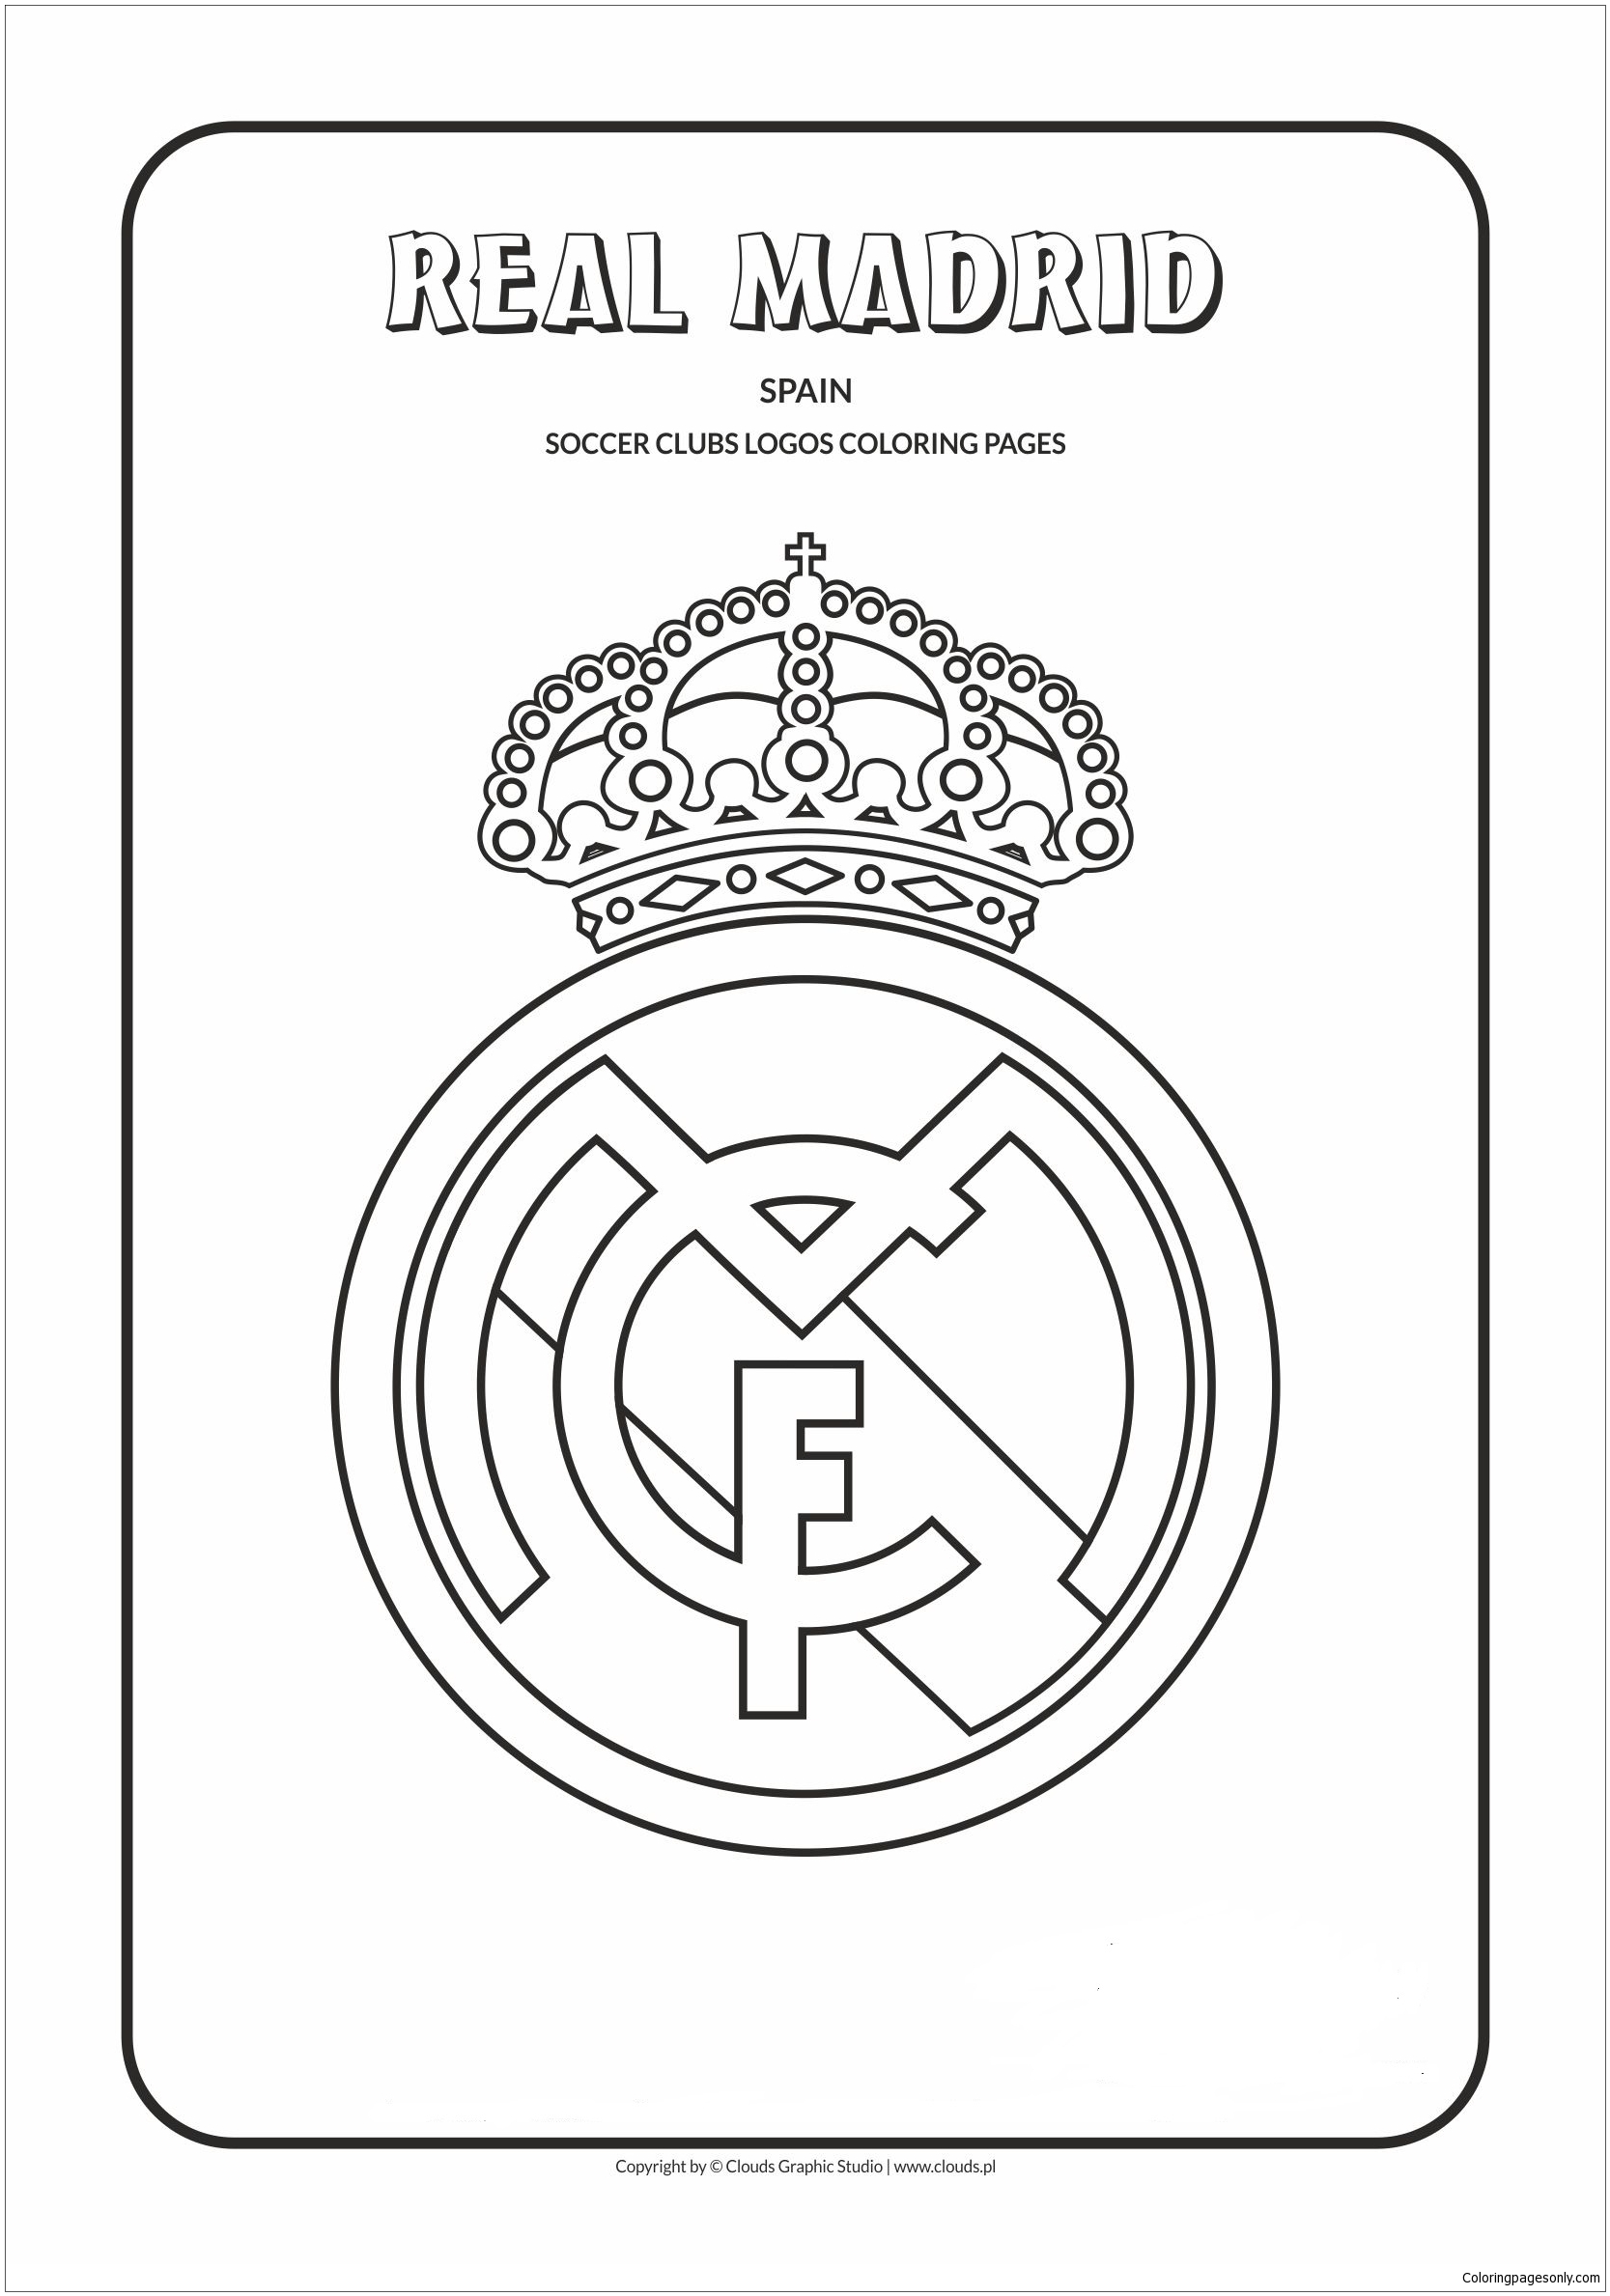 Malvorlagen von Real Madrid